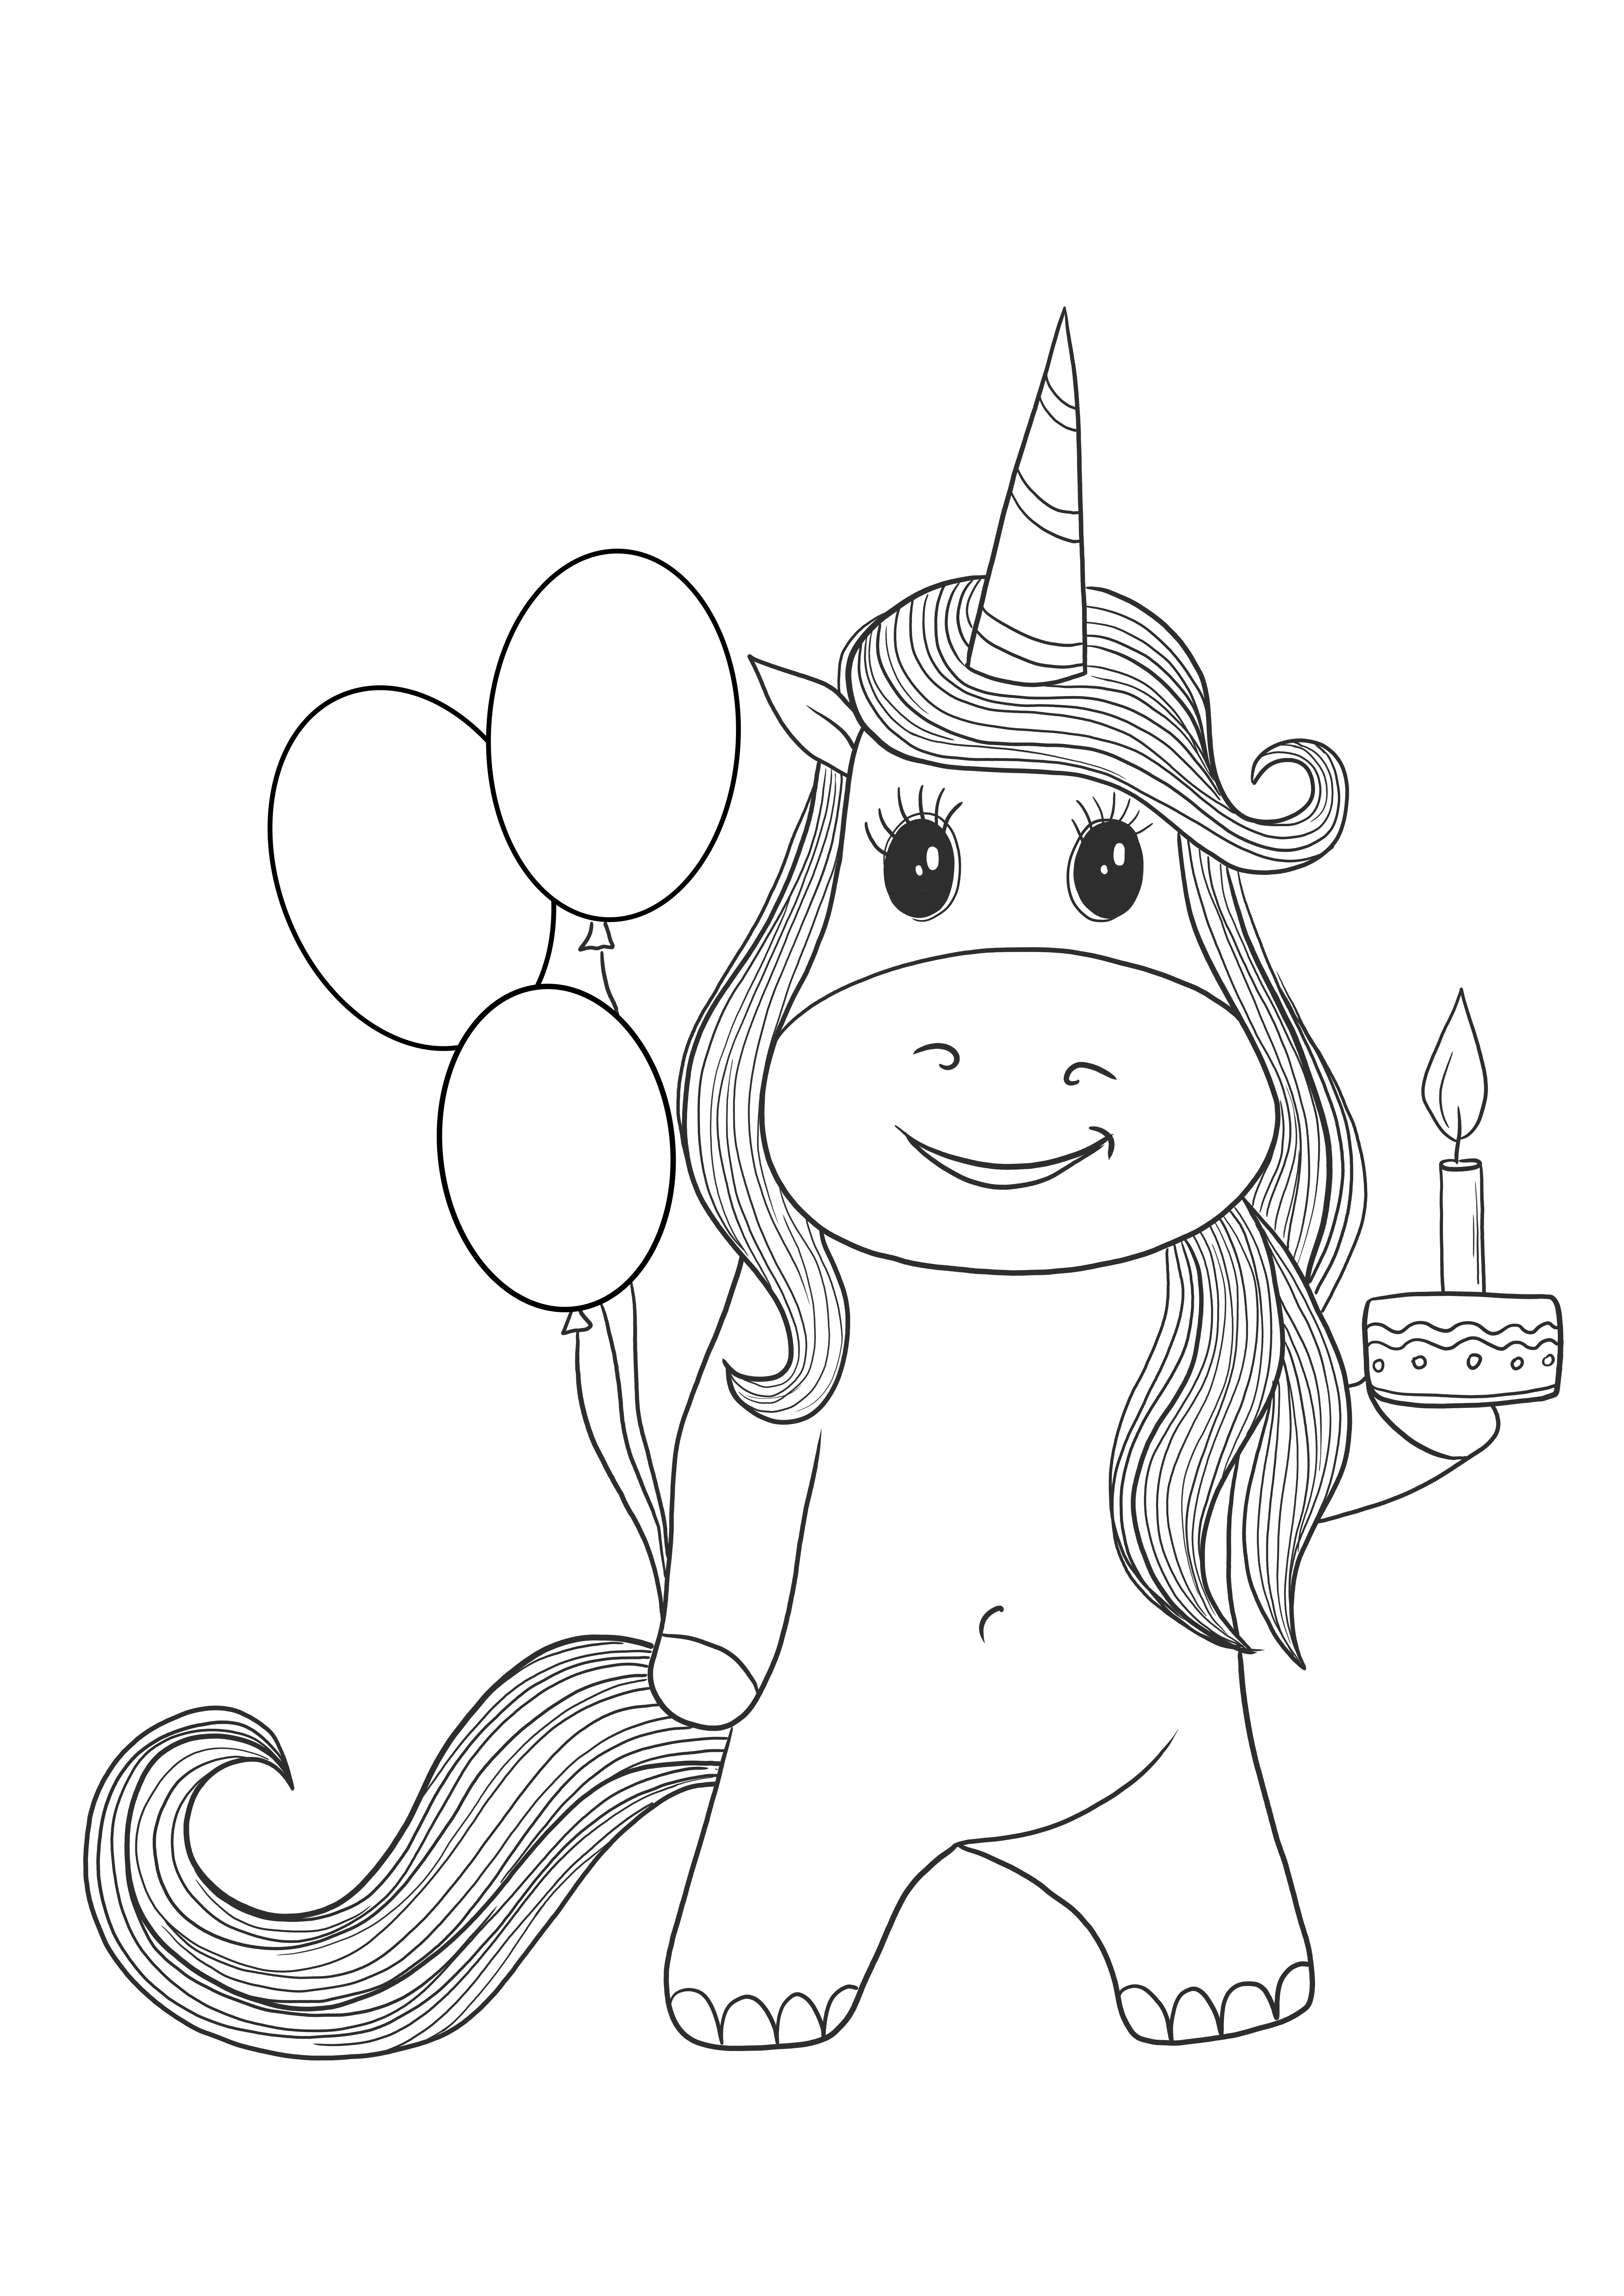 Unicorn születésnapi üdvözlőlap letölthető és ingyenesen kiszínezhető